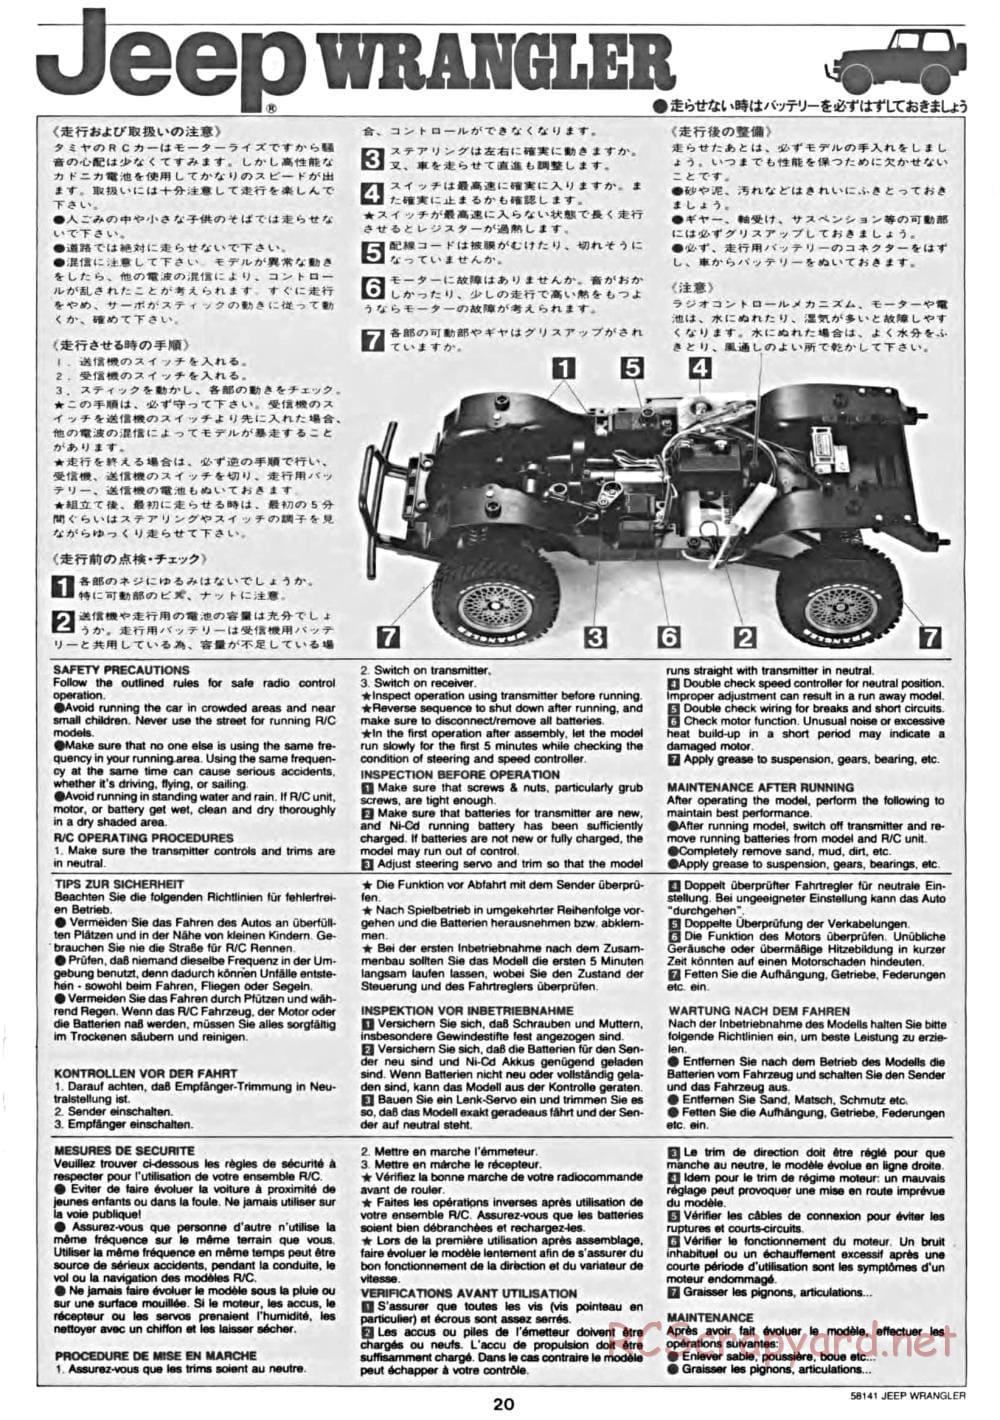 Tamiya - Jeep Wrangler - CC-01 Chassis - Manual - Page 20